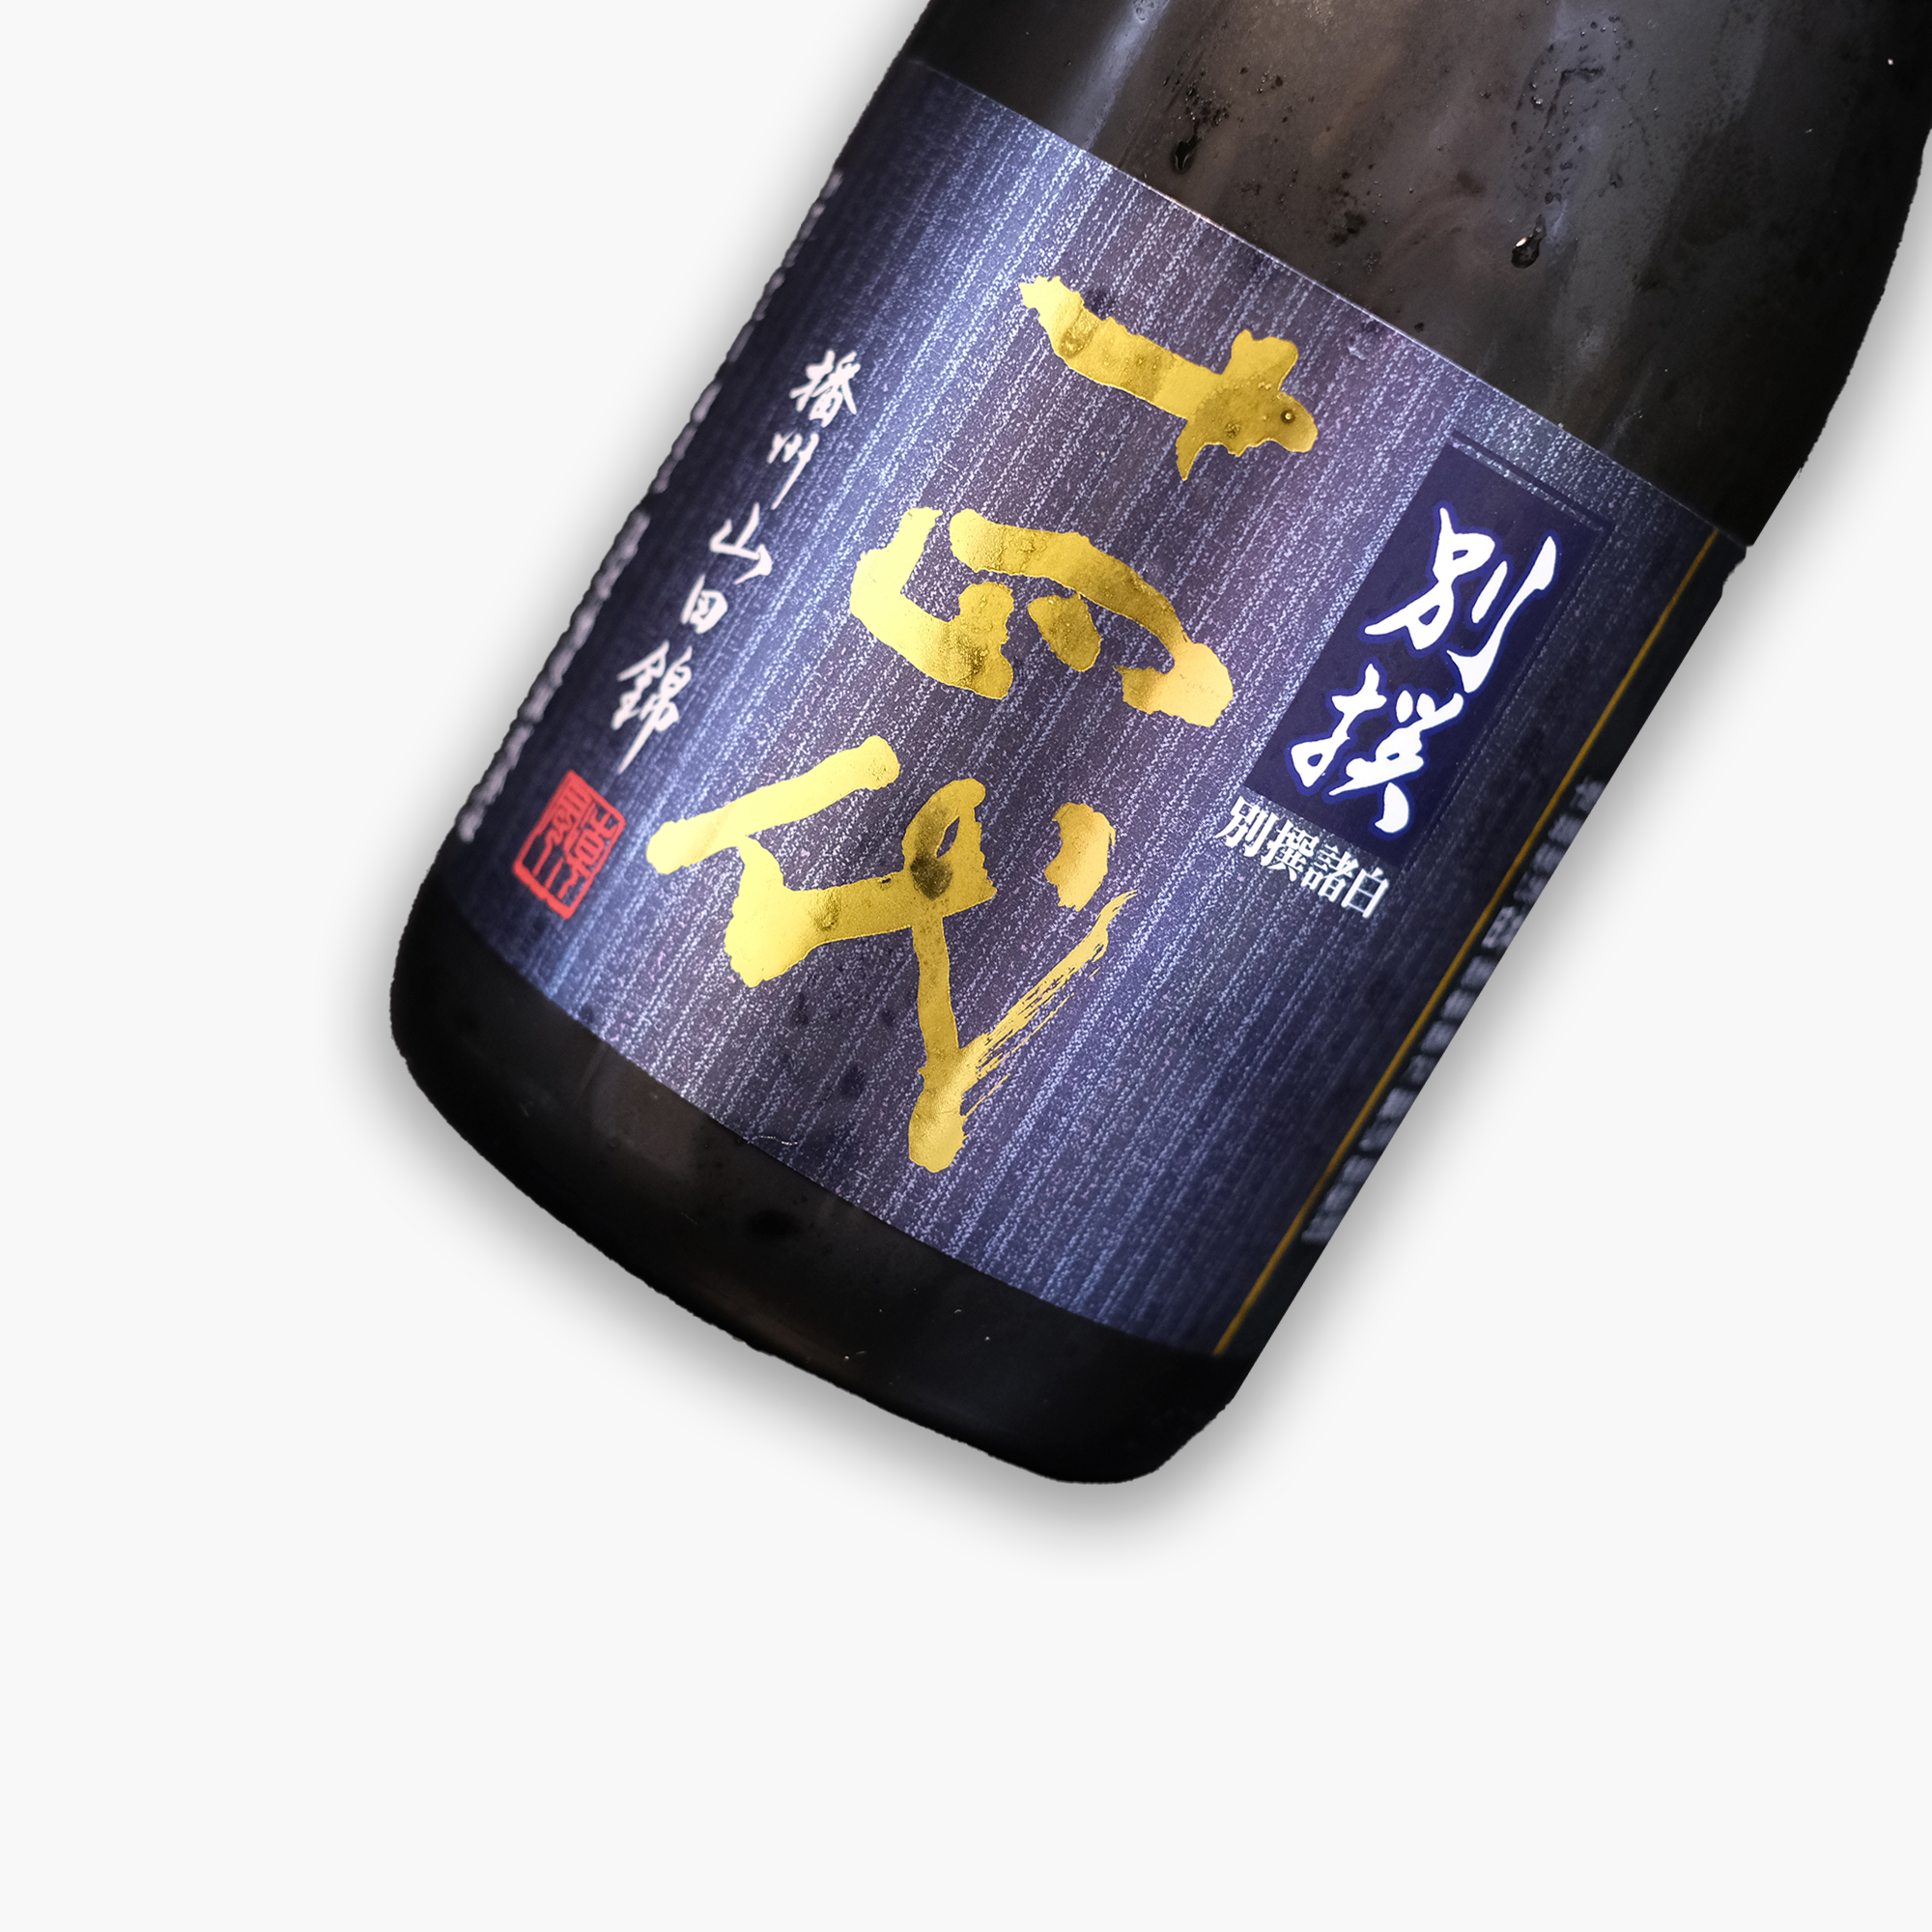 十四代別撰諸白播州山田錦純米大吟釀720ml - The Wine Show Hong Kong